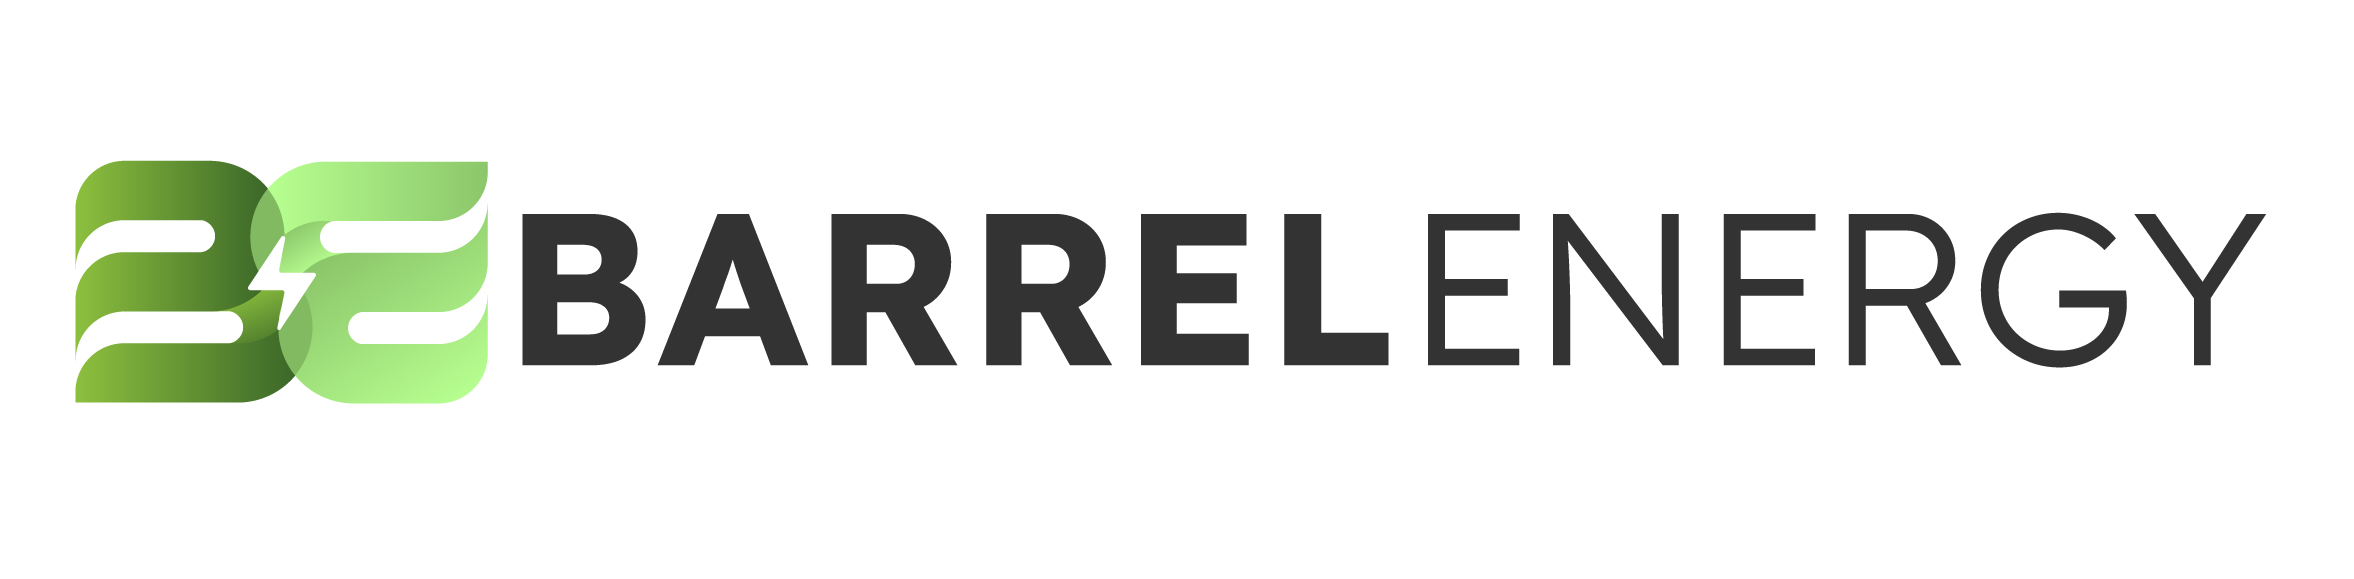 barrel logo.png